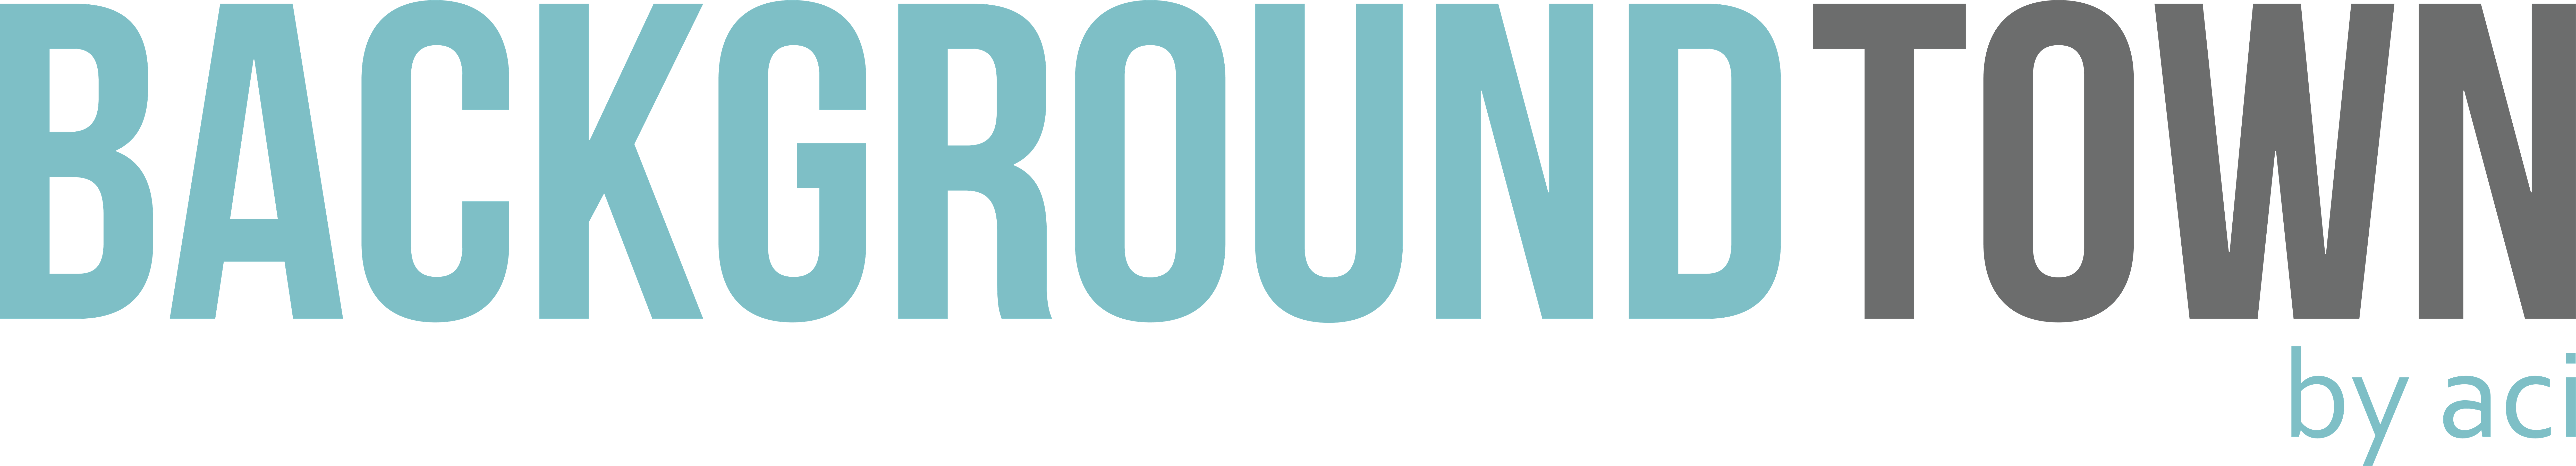 backgroundtown logo (1)